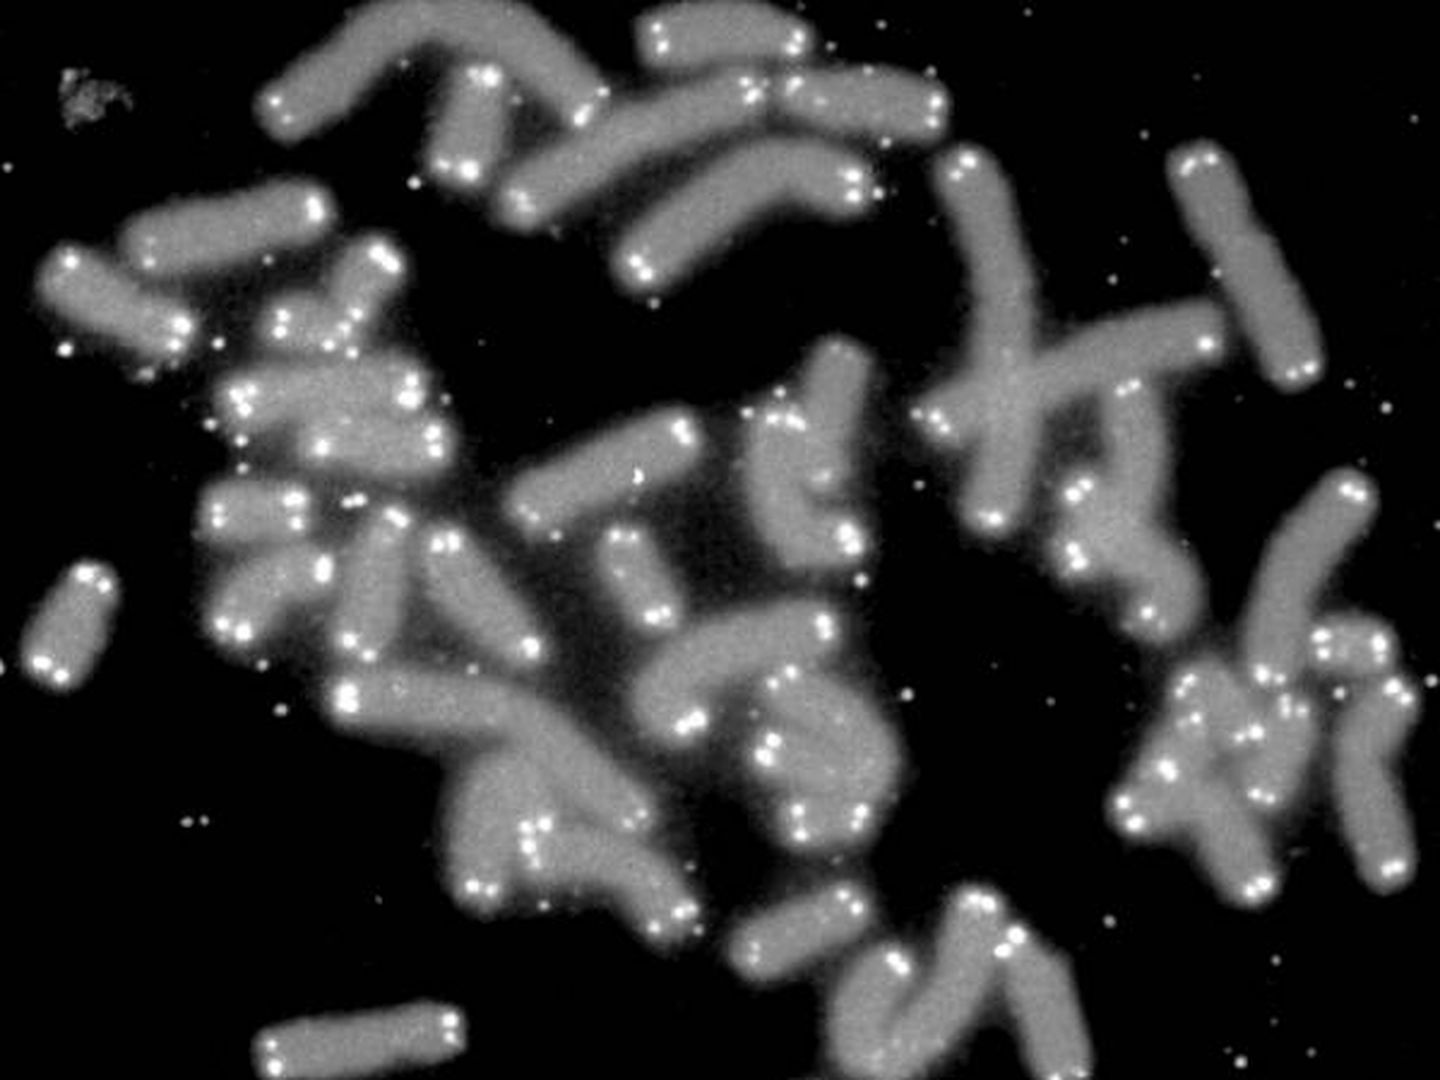 Cromosomas humanos (en gris) con sus telómeros (blancos) vistos al microscopio. (Wikipedia)